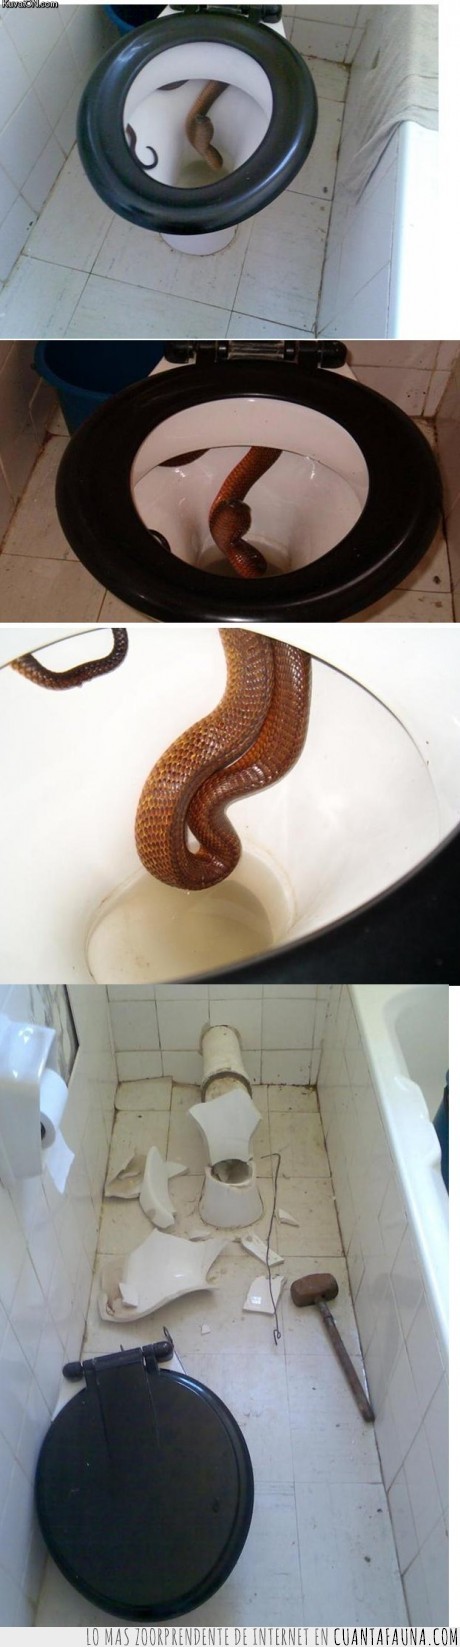 taza,serpiente,miedo,baño,asco